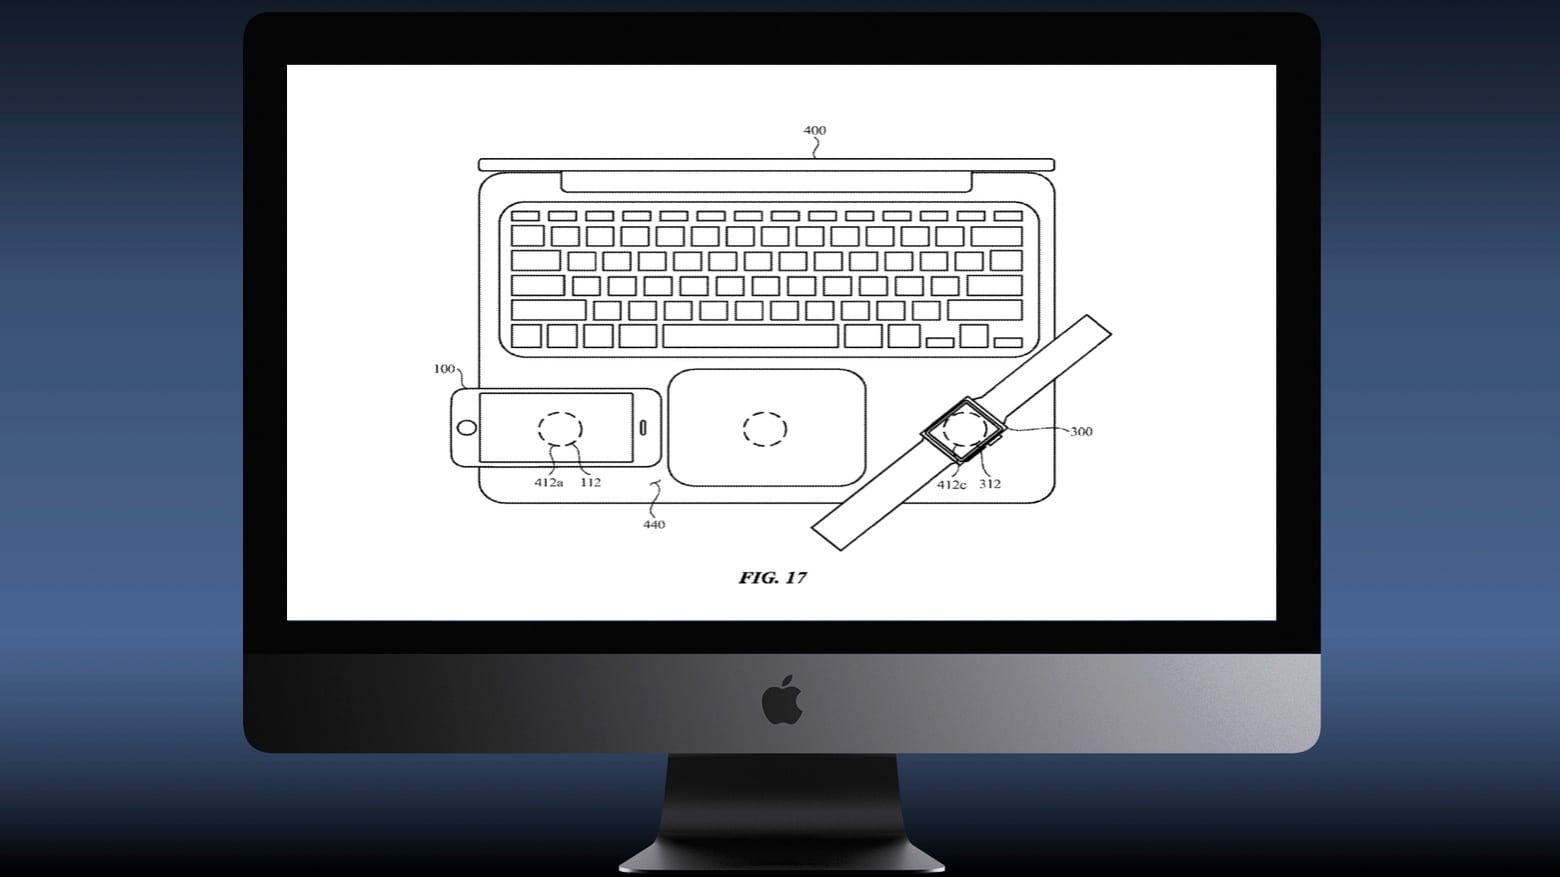 Lộ ảnh bằng sáng chế cho biết MacBook có thể biến thành bộ sạc không dây cho iPhone